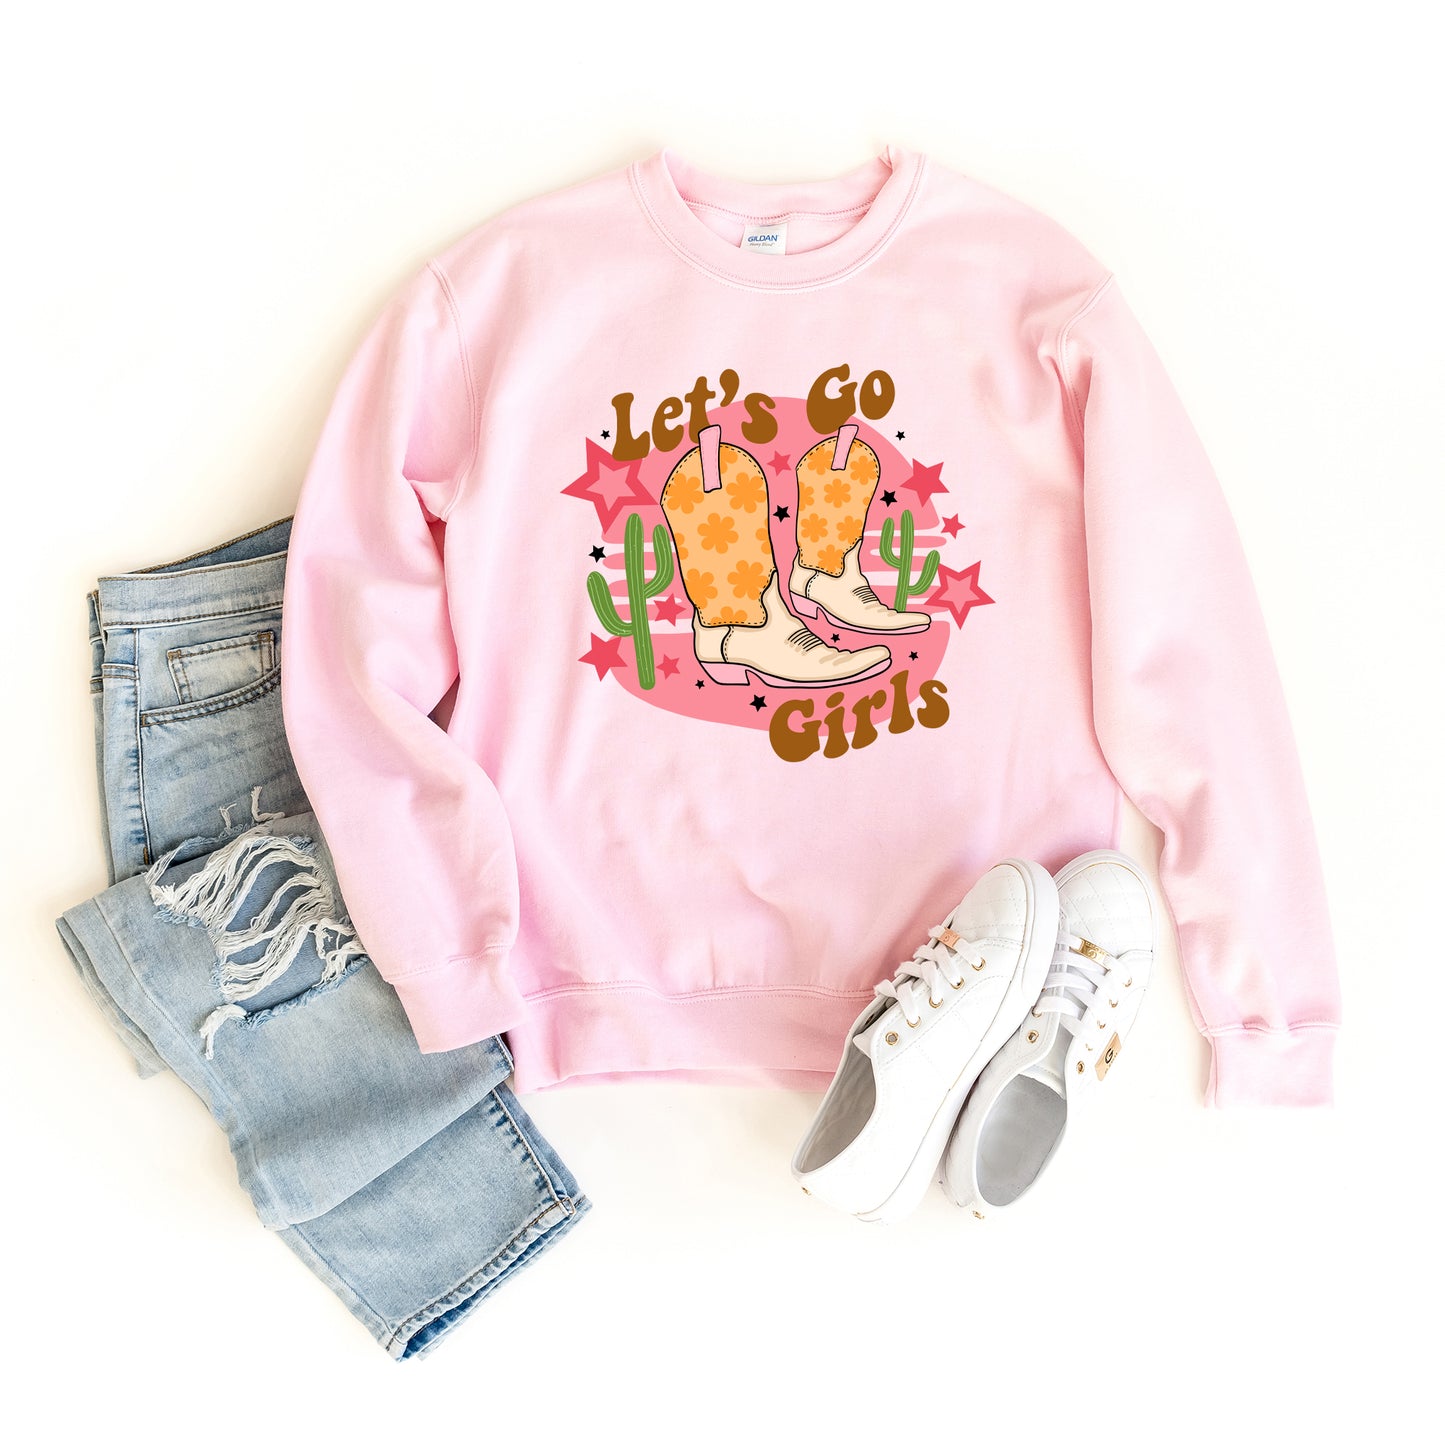 Let's Go Girls Cactus | Sweatshirt